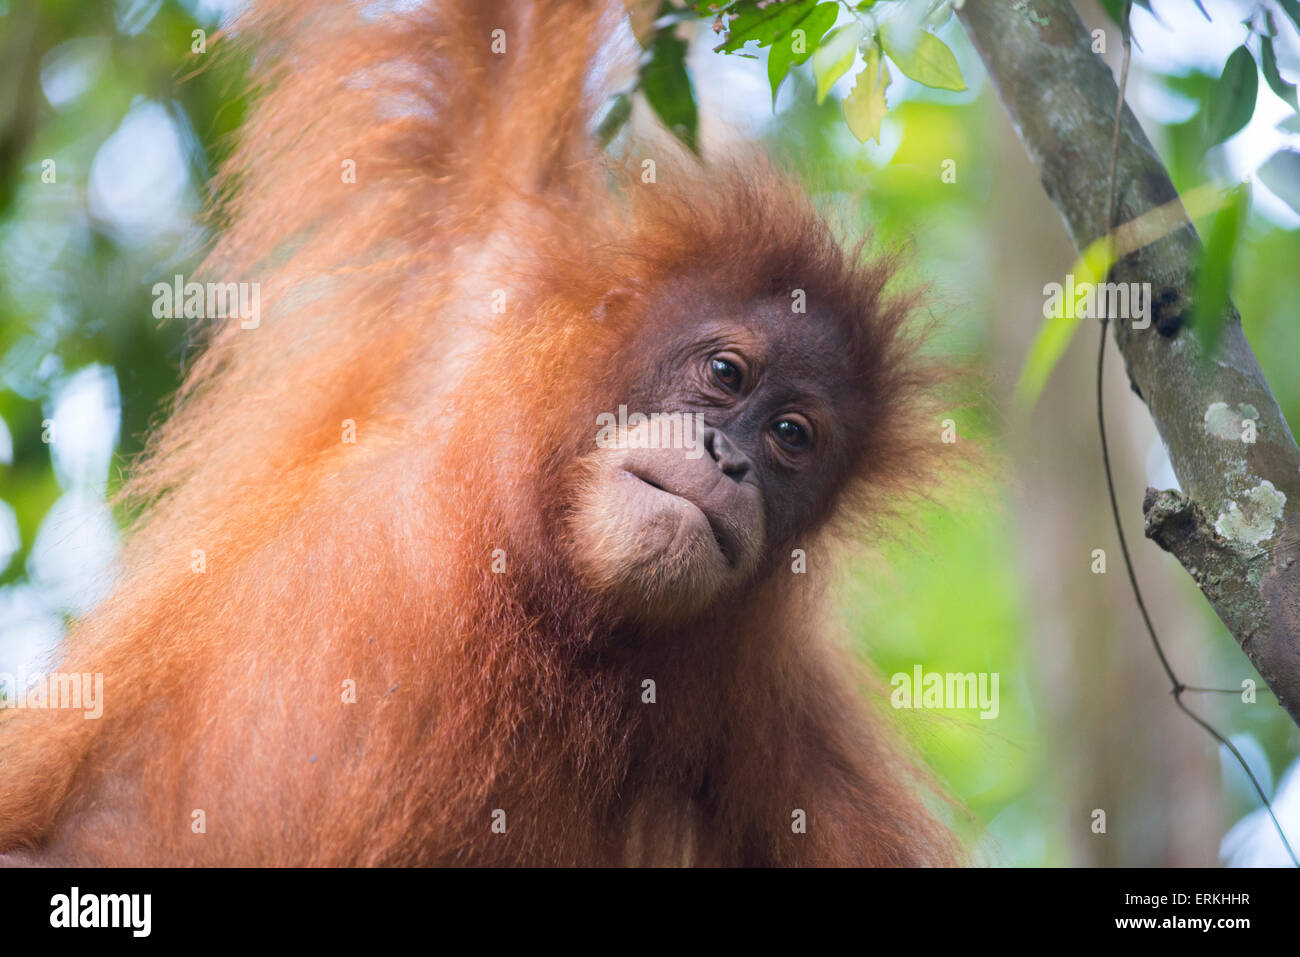 Les jeunes orang-outan, Pongo abelii de Sumatra, dans l'arbre dans le parc national de Gunung Leuser, nord de Sumatra, en Indonésie. Banque D'Images